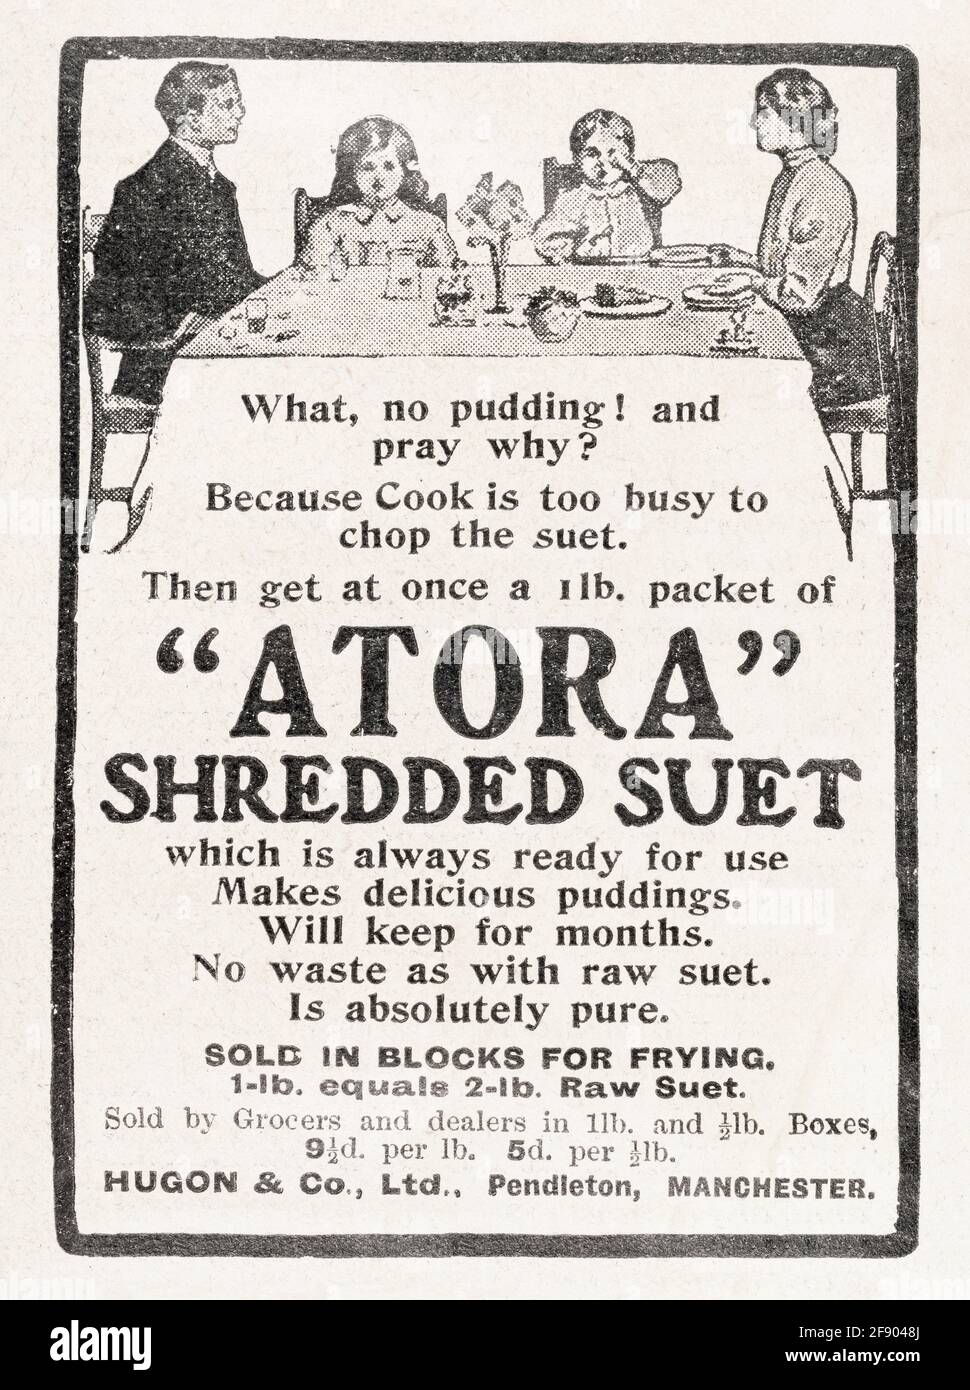 Publicité du magazine Old vintage Victorian Atora Beef suet de 1907 - avant les normes de publicité. Publicité ancienne de nourriture, publicité ancienne célèbre de marque de nourriture. Banque D'Images